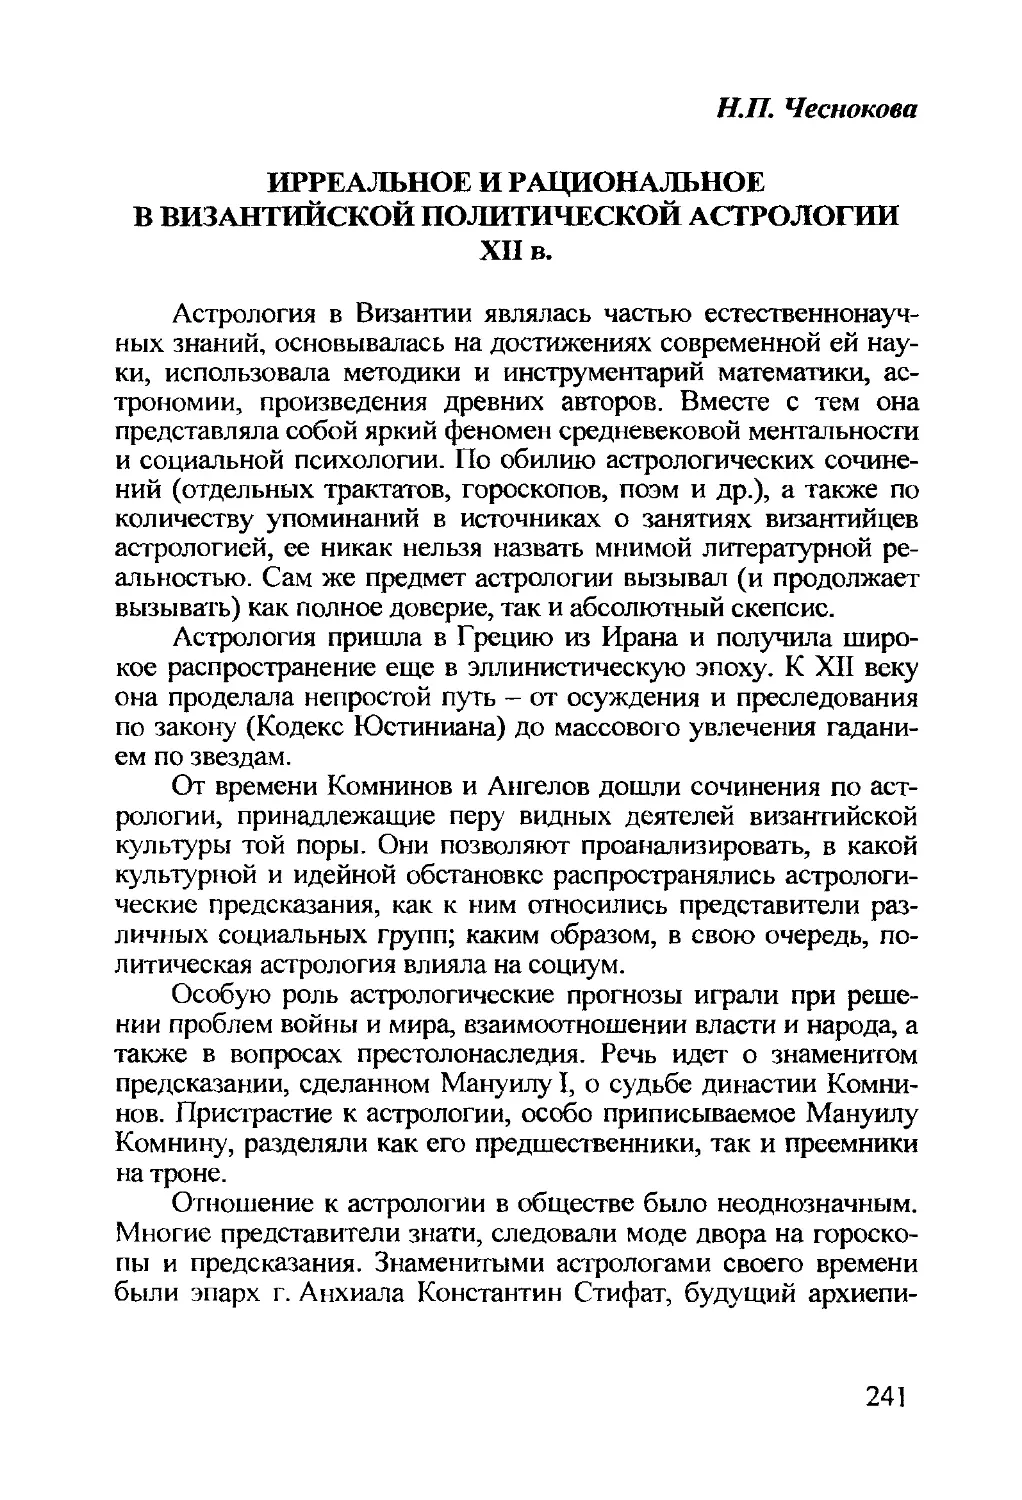 Чеснокова Н.П. Ирреальное и рациональное в византийской политической астрологии XII в